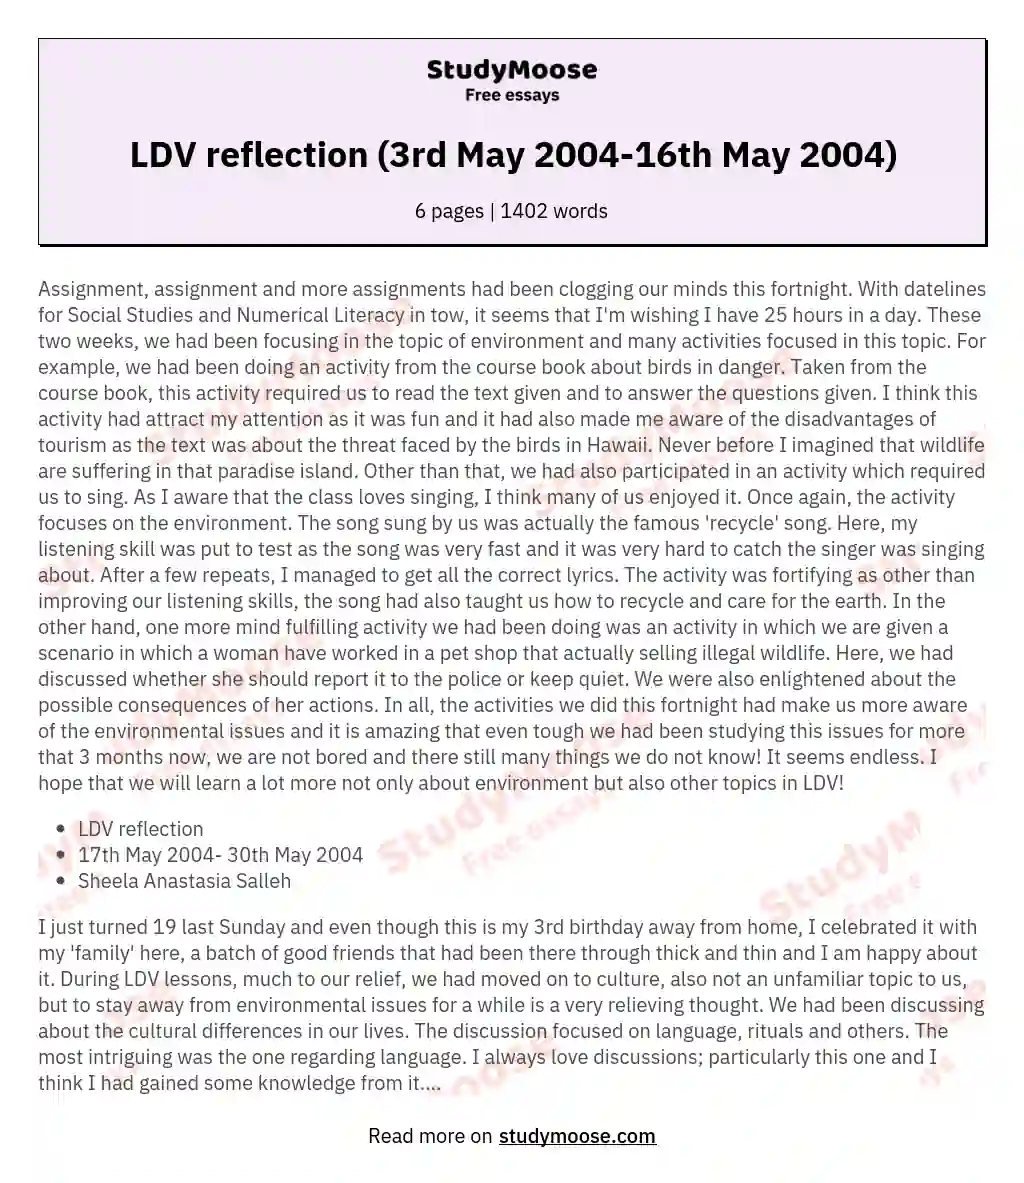 LDV reflection (3rd May 2004-16th May 2004)